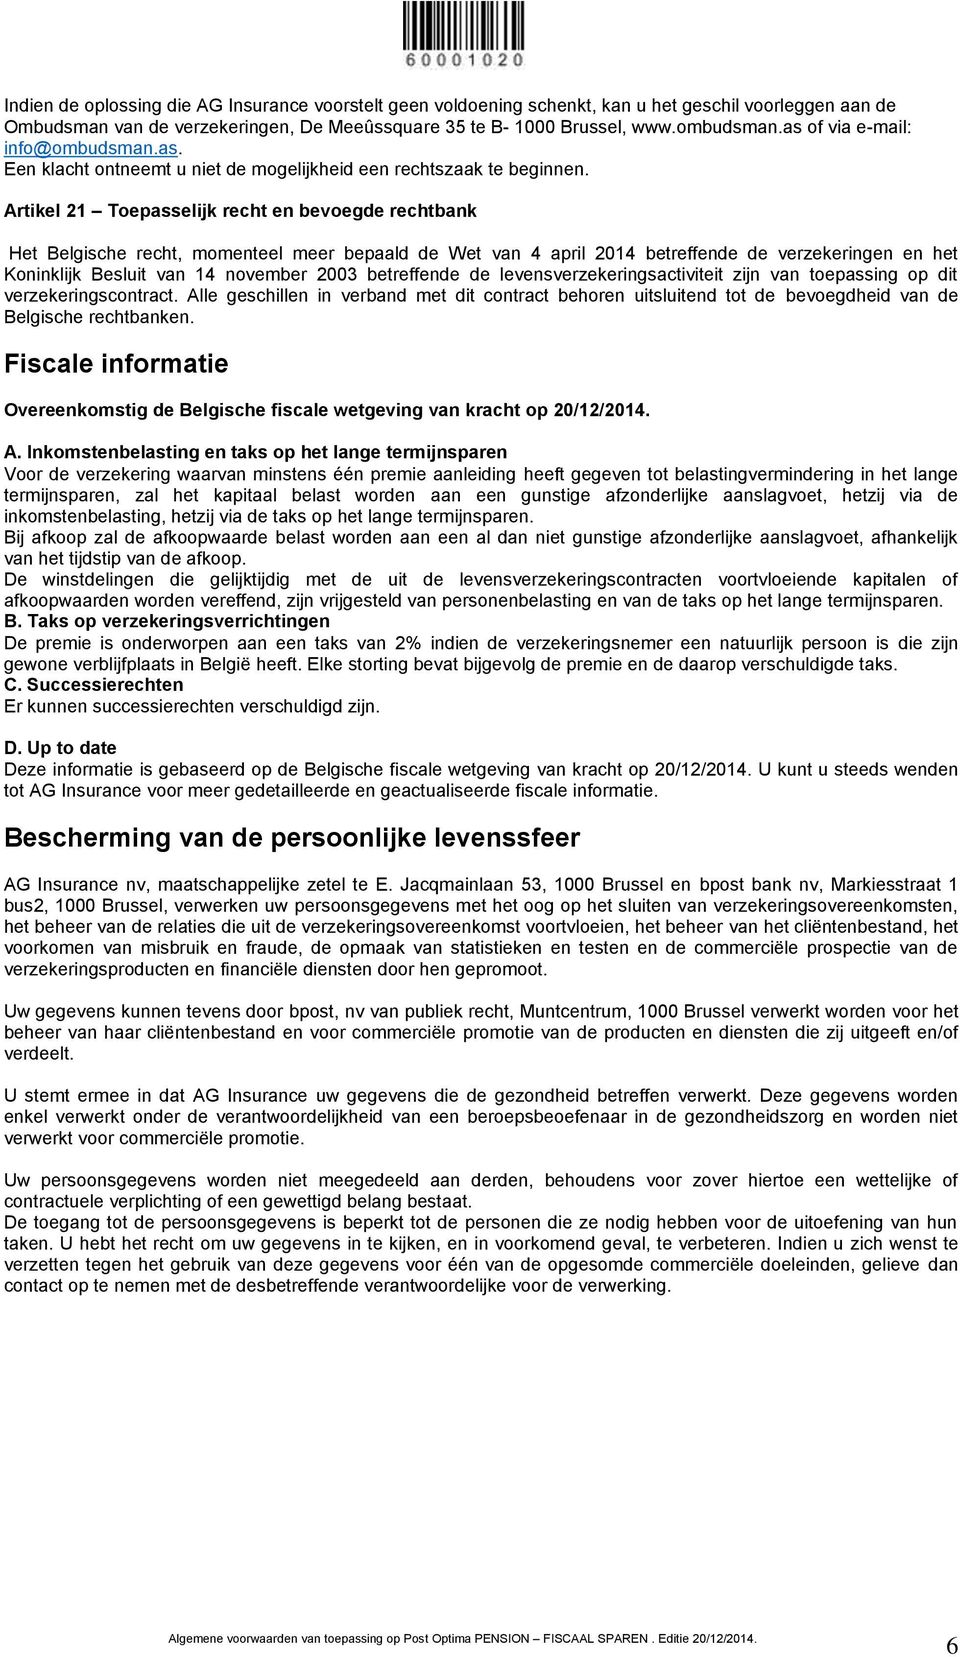 Artikel 21 Toepasselijk recht en bevoegde rechtbank Het Belgische recht, momenteel meer bepaald de Wet van 4 april 2014 betreffende de verzekeringen en het Koninklijk Besluit van 14 november 2003